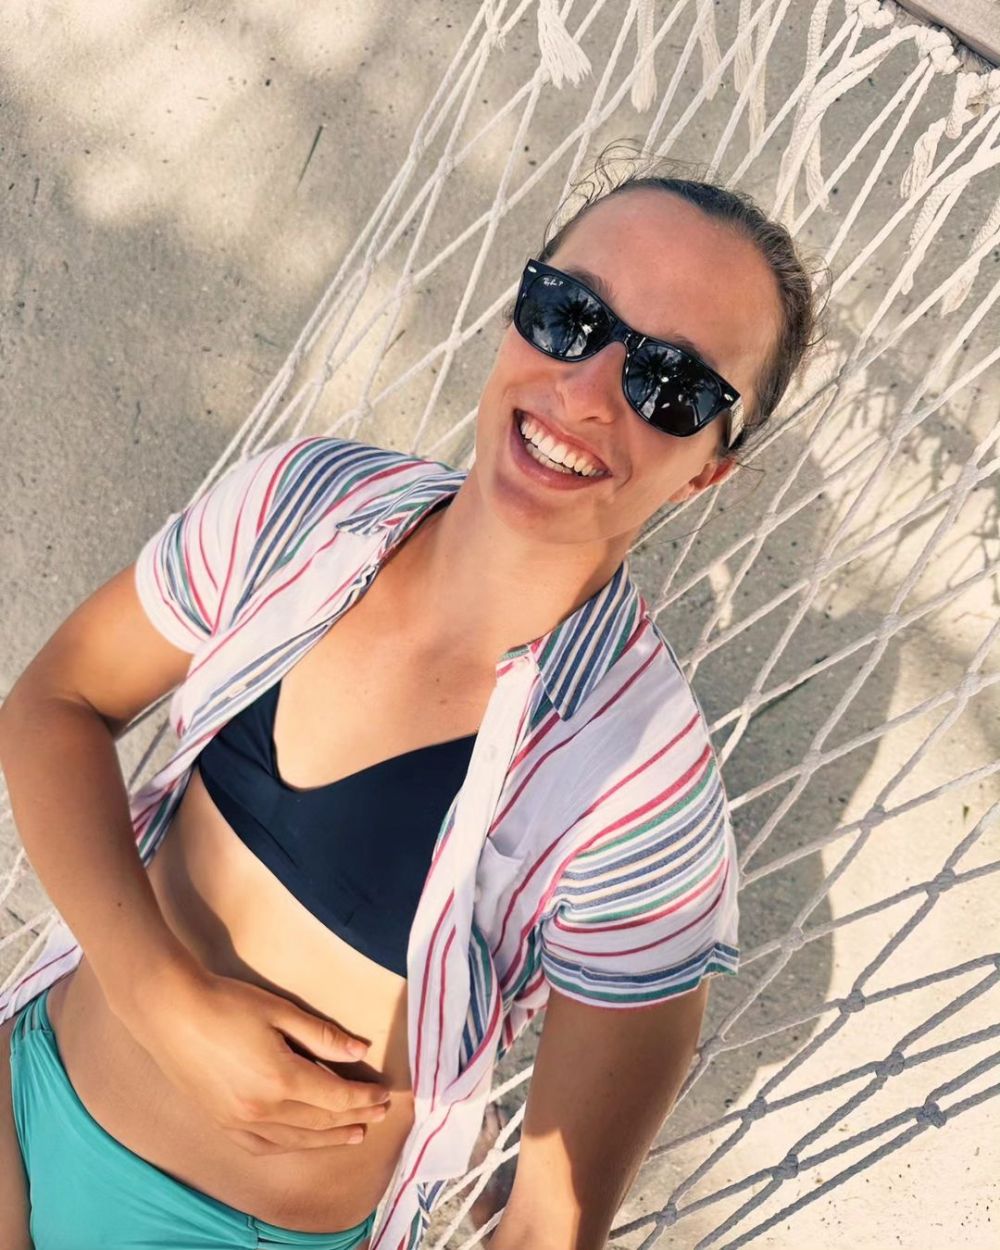 Petrece în bikini terminarea sezonului pe locul 1 WTA: ipostazele în care a fost surprinsă Iga Swiatek în vacanță _61